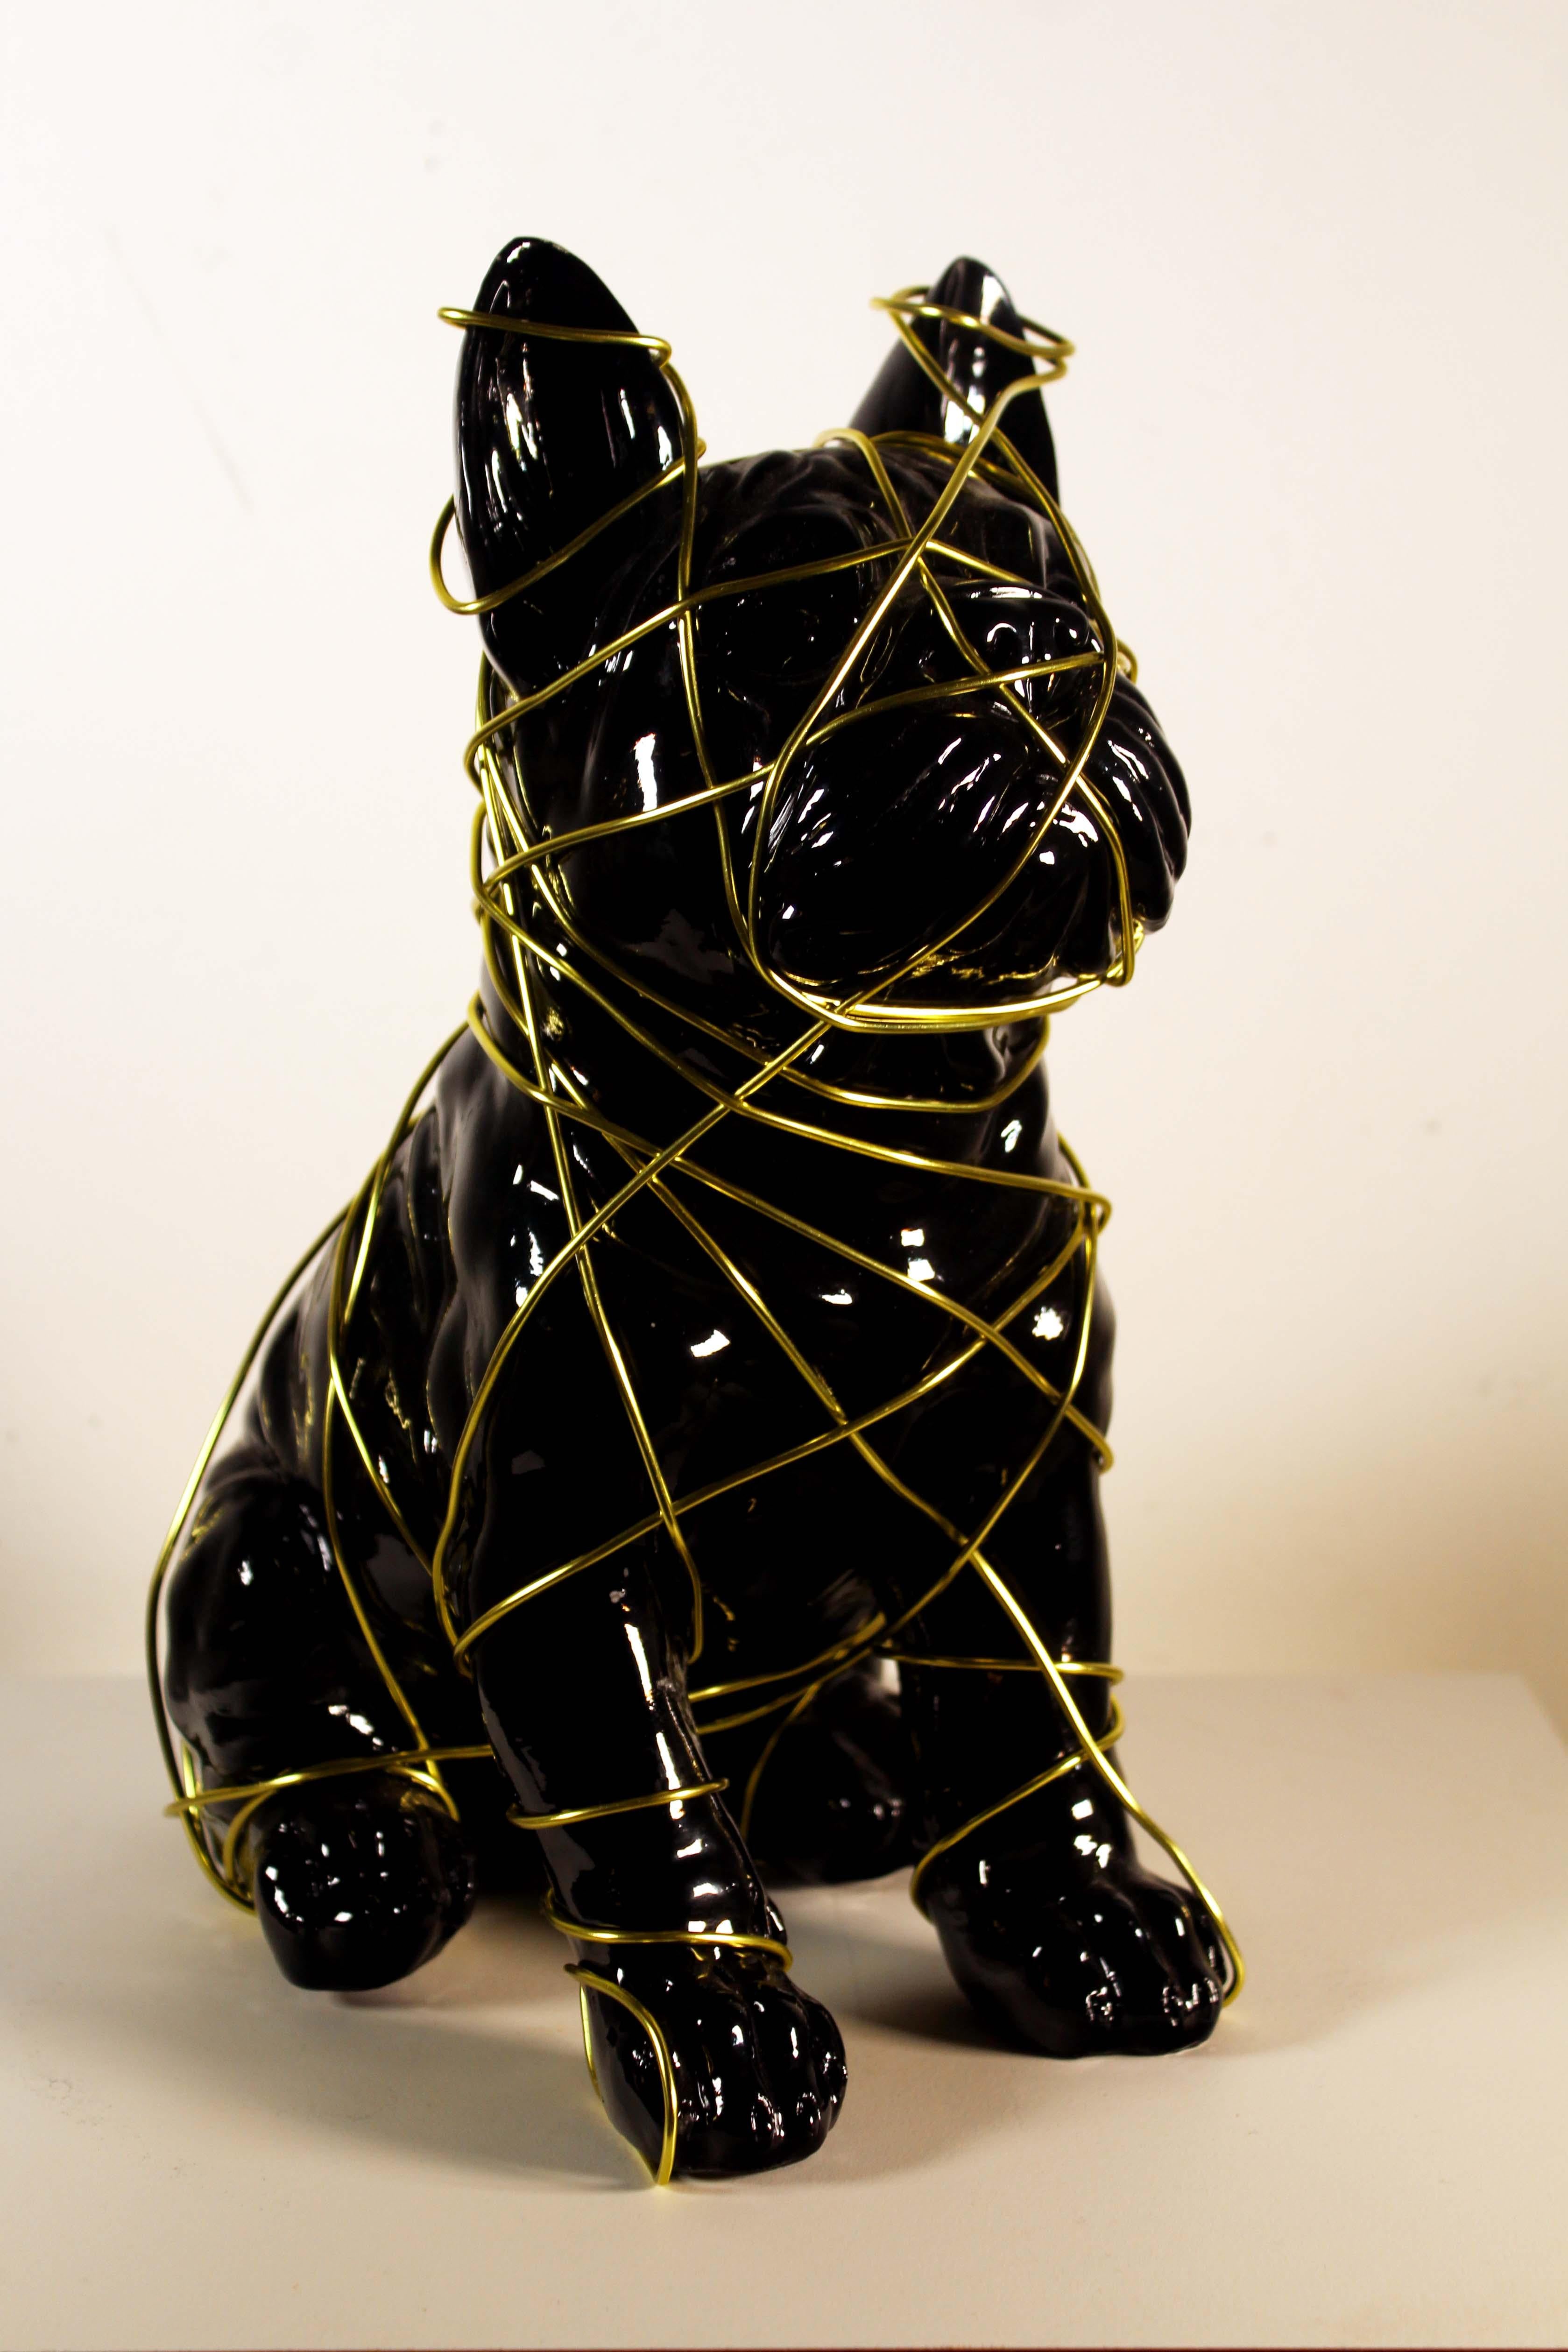 Diese schöne Frenchie Dog Neon mit Draht-Skulptur Hommage an Dan Flavin bis für die Prüfung. Der schwarze und der gelbe Draht harmonieren wunderbar miteinander und verleihen dem Stück eine schöne, widersprüchliche Tiefe. 
Abmessungen: 6